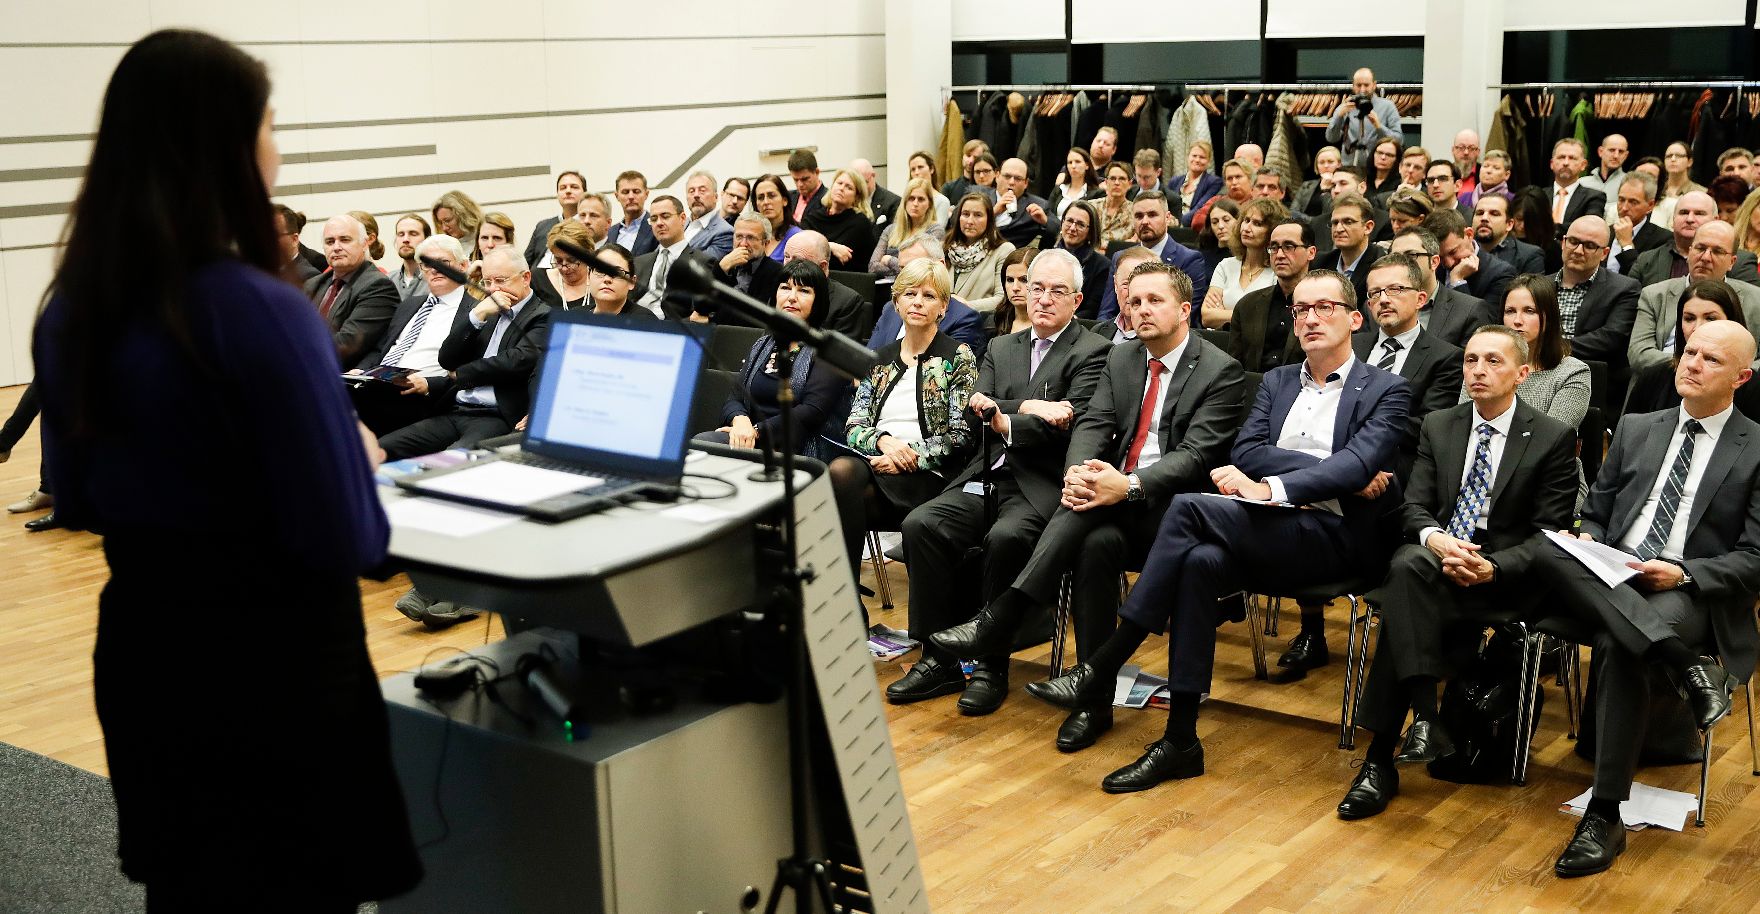 Am 22. November 2017 fand die Eröffnung des Kompetenzzentrums für Verwaltungswissenschaften auf dem FH Campus Wien statt. Im Bild Staatssekretärin Muna Duzdar.